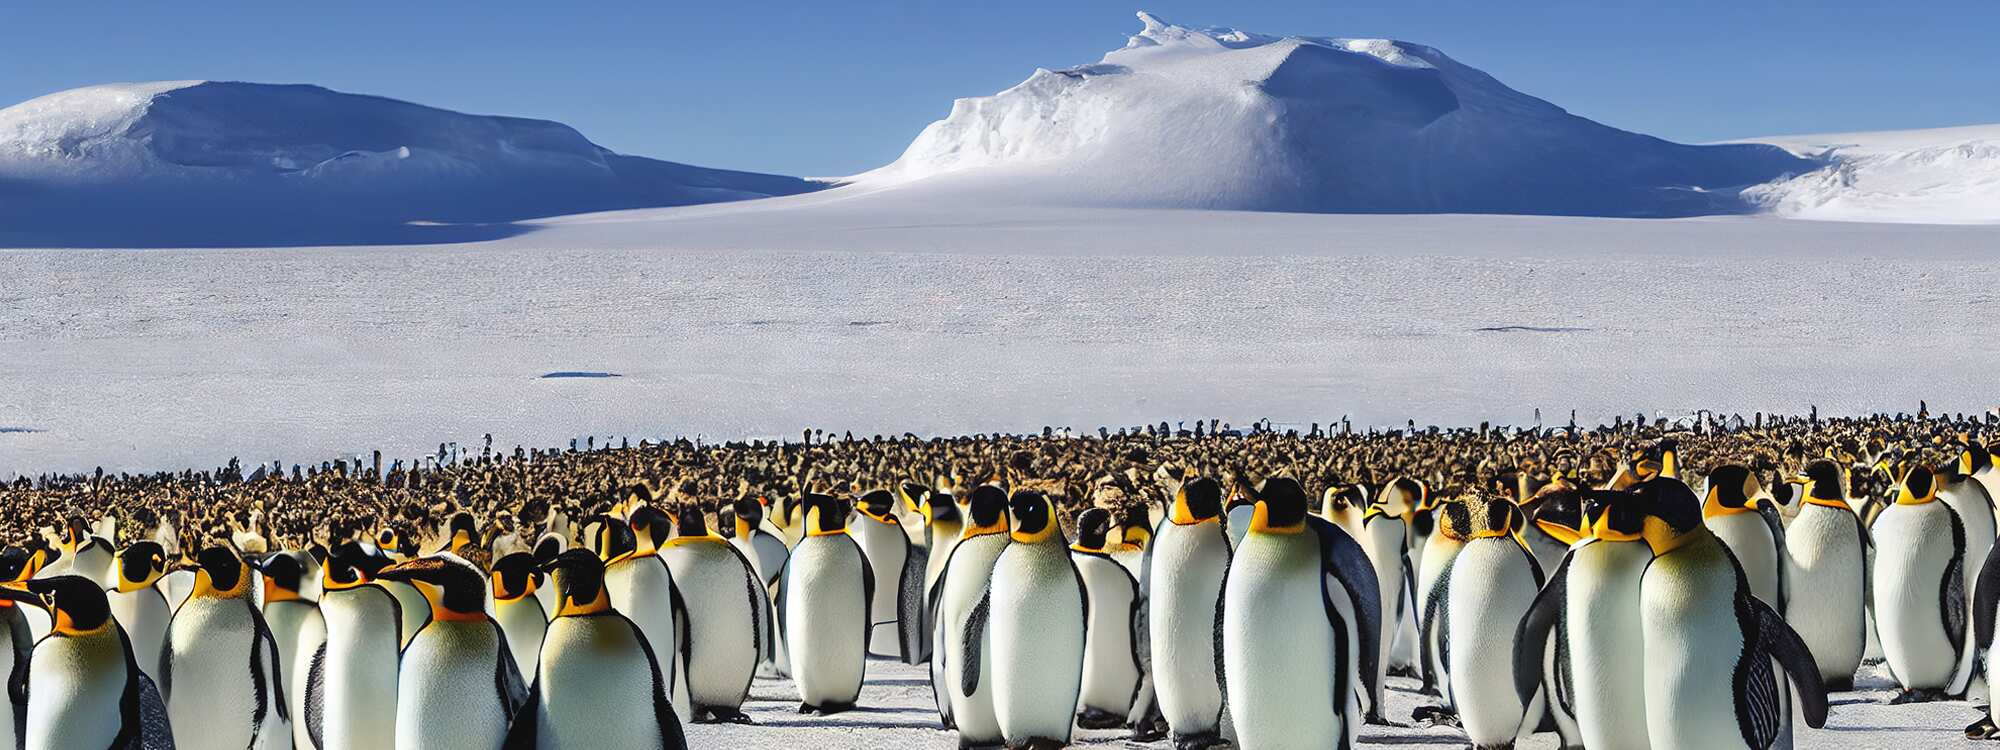 Eine große Herde von Kaiserpinguinen versammelte sich an einem kalten, sonnigen Tag auf einer Eisscholle nahe der Südlichen Orkneyinseln in der Antarktis